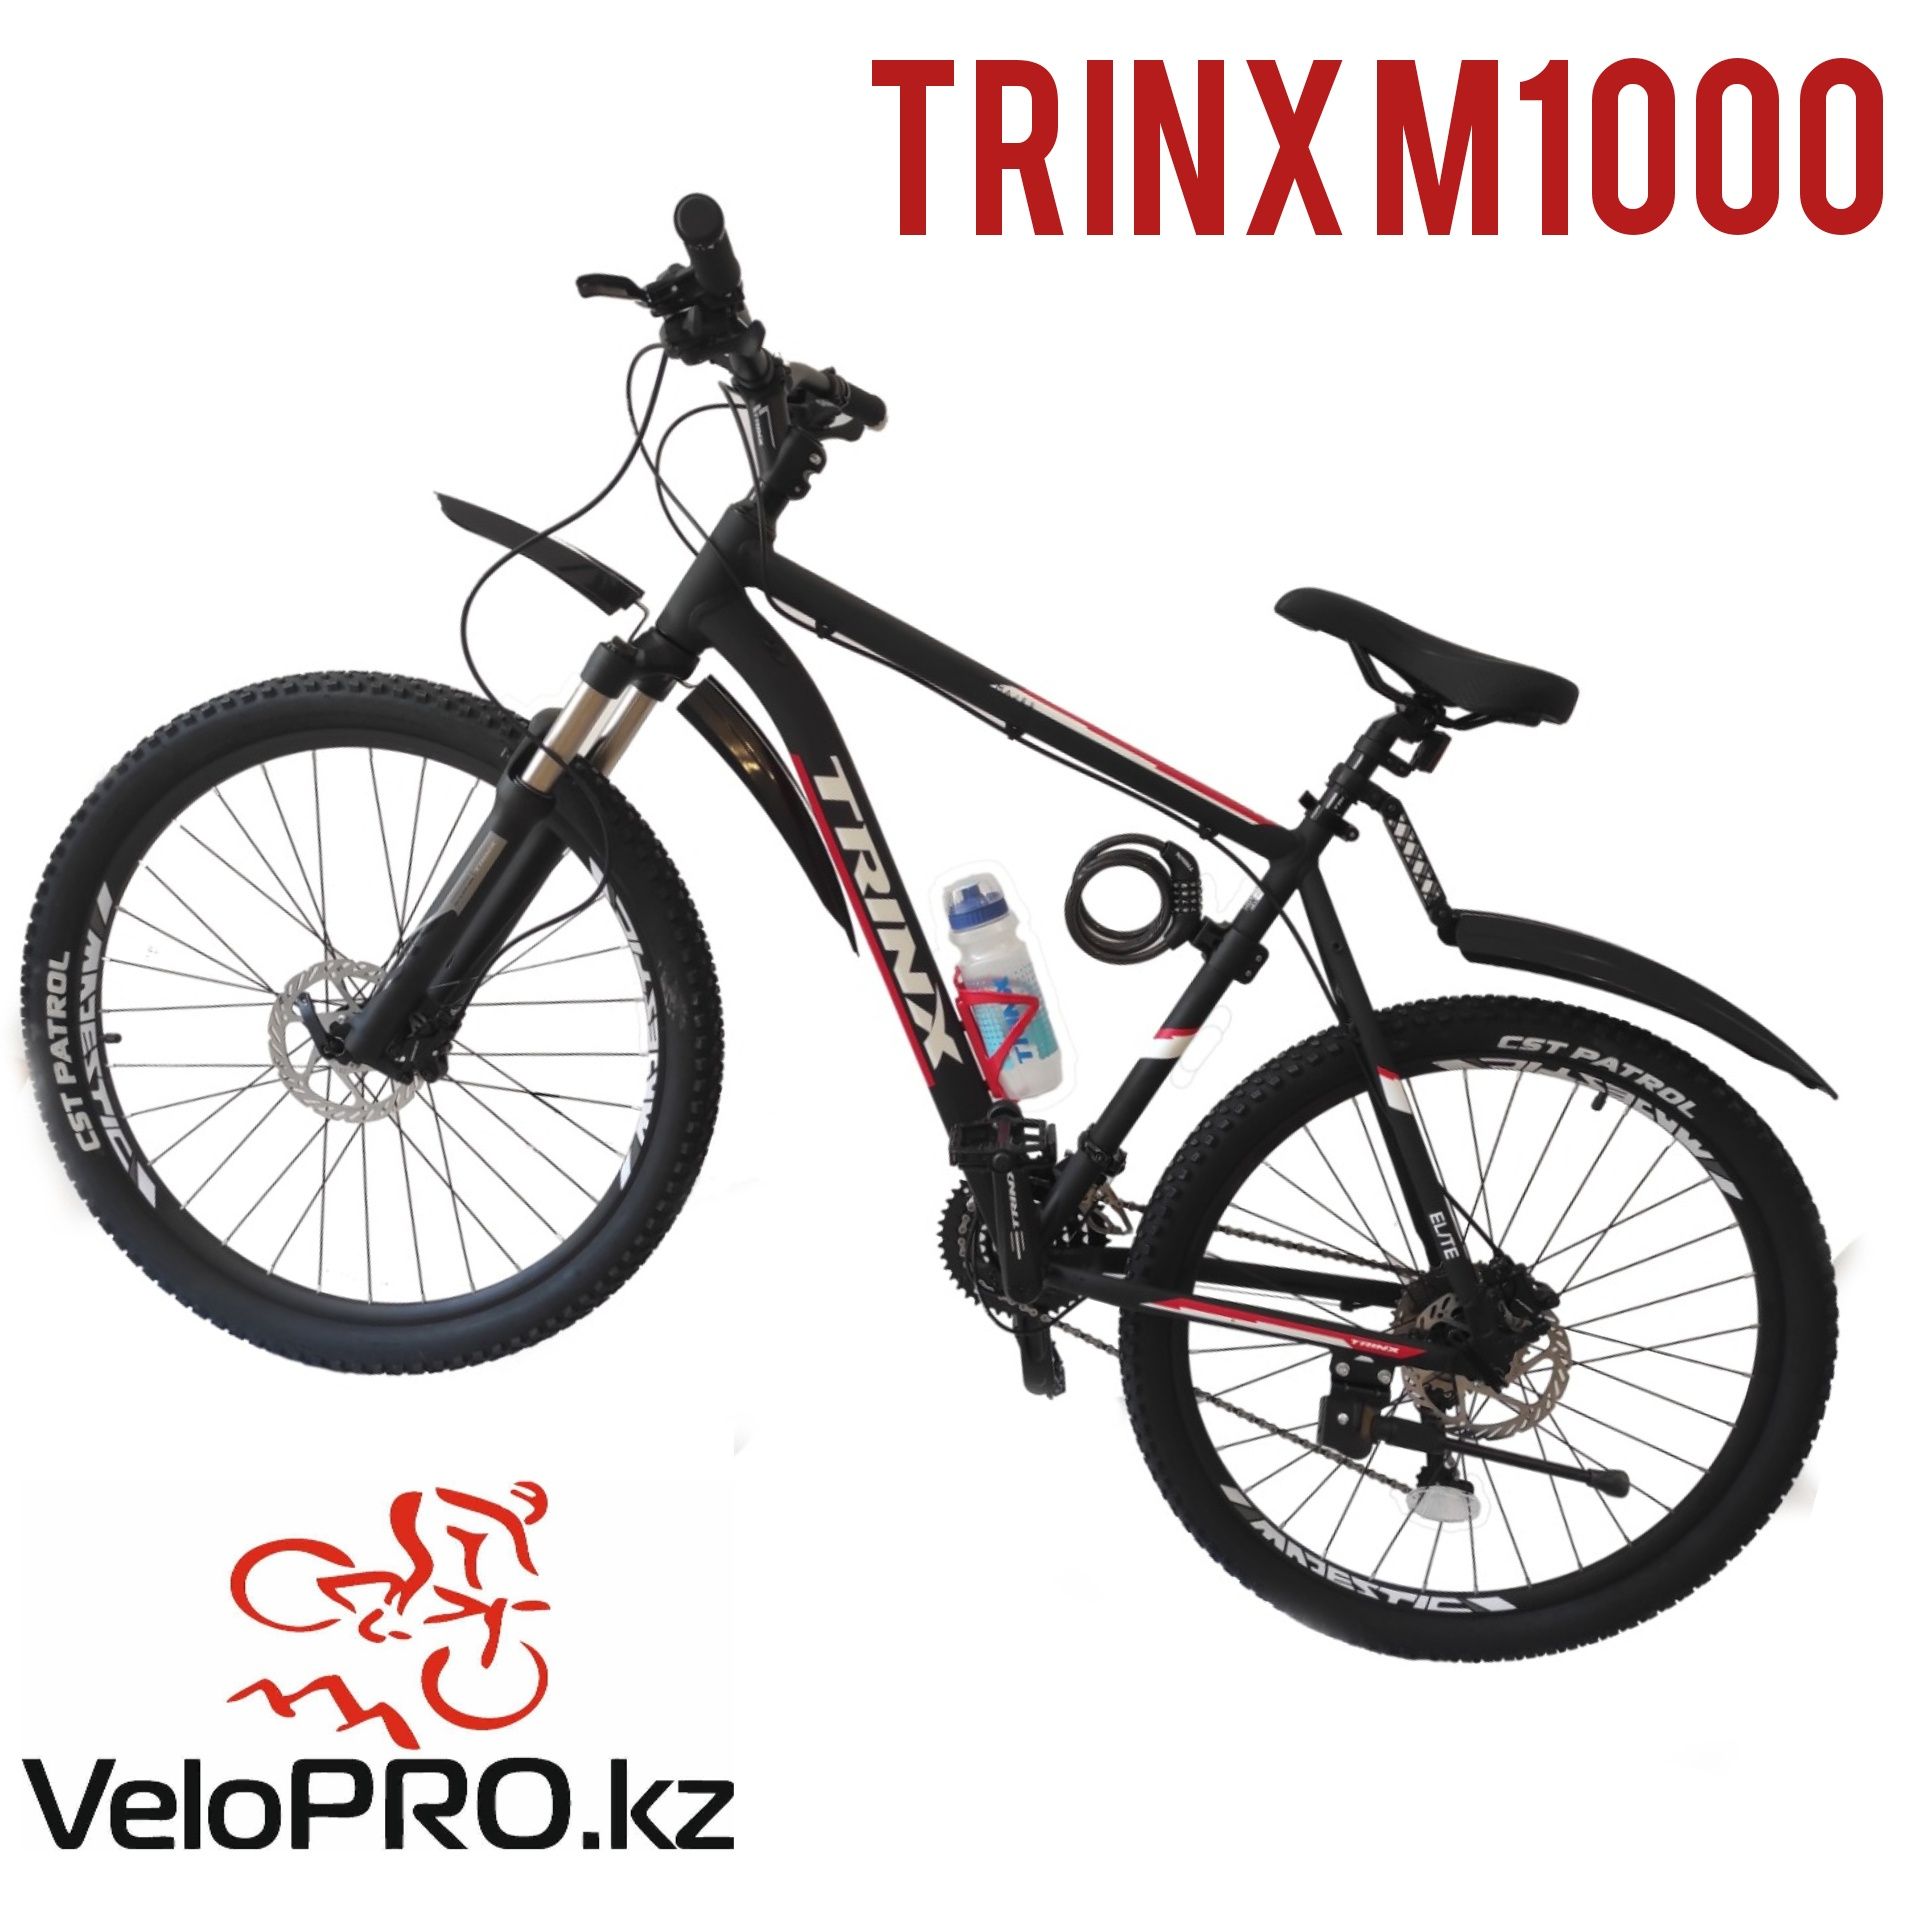 Велосипед Trinx m1000. Рама 16,19,21". Колеса 26,27.5,29". Гидравлика